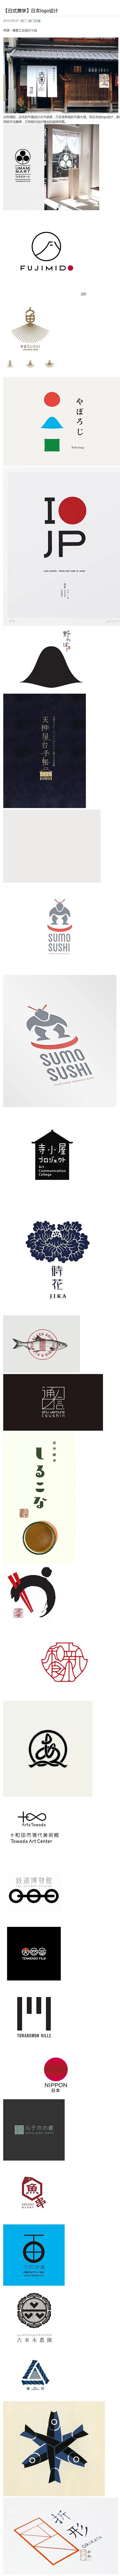 【日式美学】日本logo设计@^_^嘻嘻...